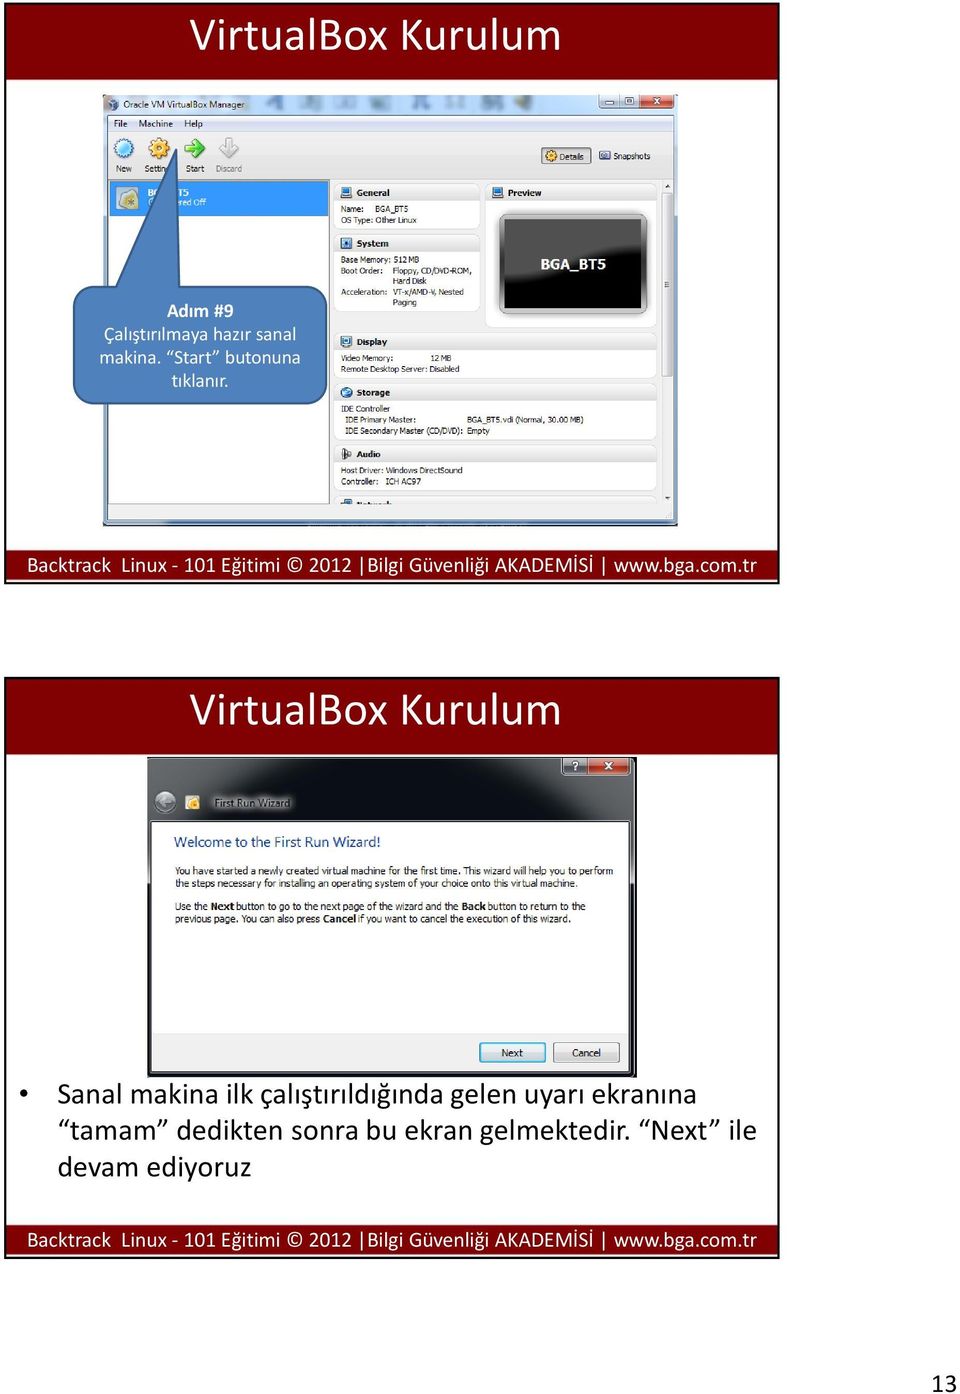 VirtualBox Kurulum Sanal makina ilk çalıştırıldığında